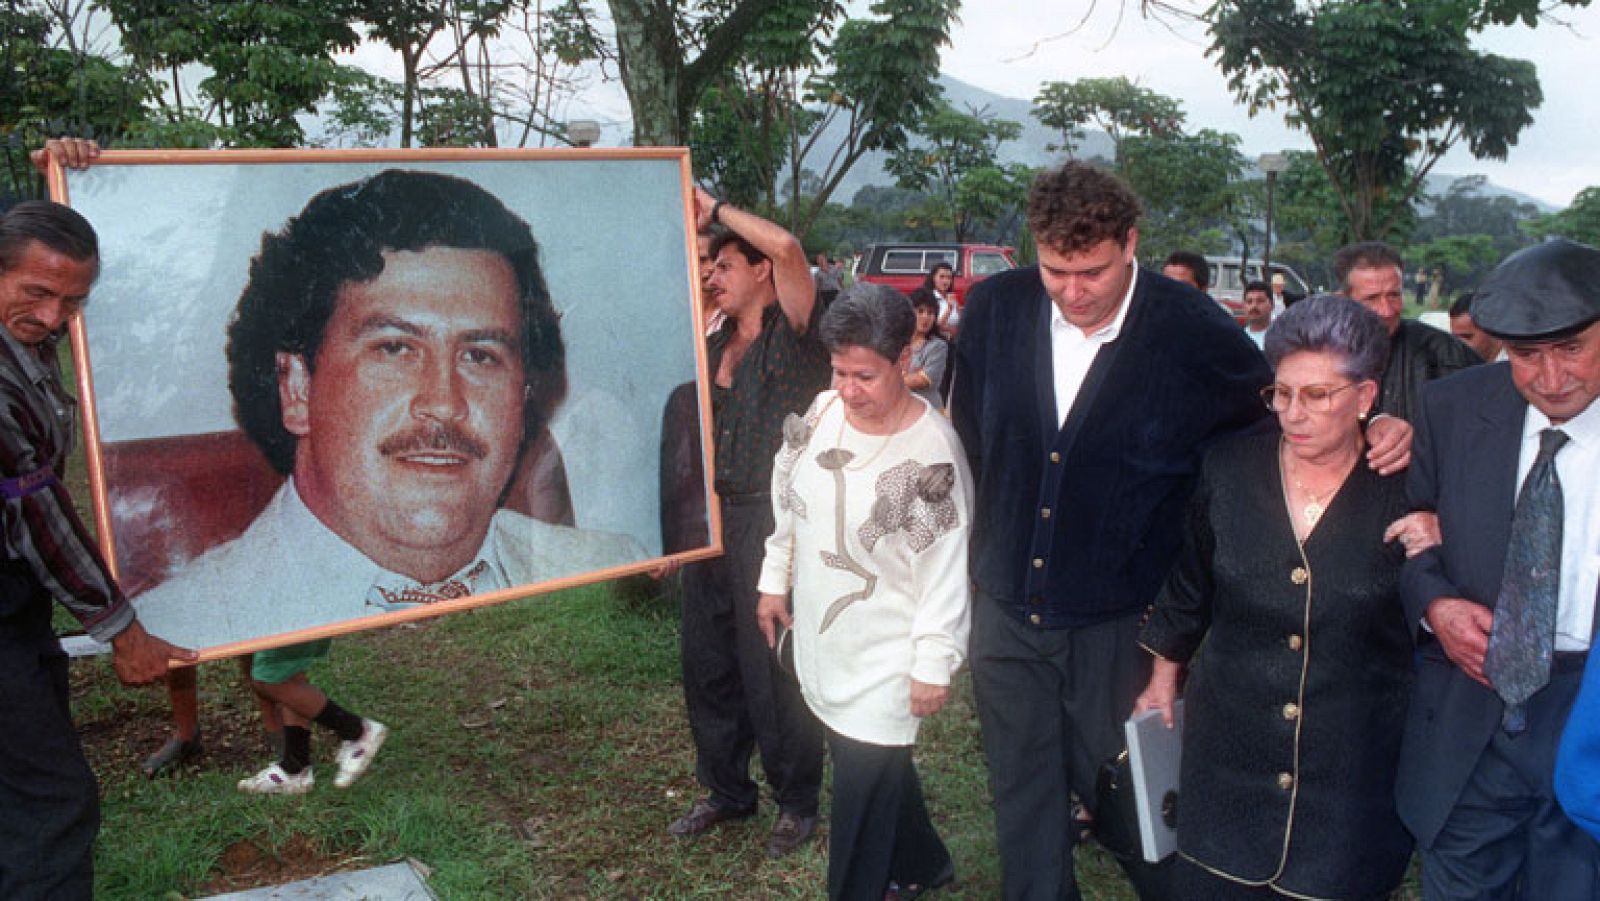  Hace, exactamente, 20 años de la caída de un hombre que puso contra las cuerdas al Estado colombiano. El 2 de diciembre de 1993, un cuerpo de élite de la policía mató al narcotraficante Pablo Escobar. El fundador y jefe del Cartel de Medellín exportaba el 70% de la droga que se consumía en Estados Unidos y se calcula que en su guerra contra el Estado, llegó a ordenar la muerte de unas 5.000 personas. Su captura cambió la manera de trabajar de la policía antidroga. Tras la muerte de Pablo Escobar, cayeron decenas de narcotraficantes. Muchos otros bajaron el perfil y cambiaron la vida ostentosa que llevaban y que, hasta entonces, era típica de los narcos.